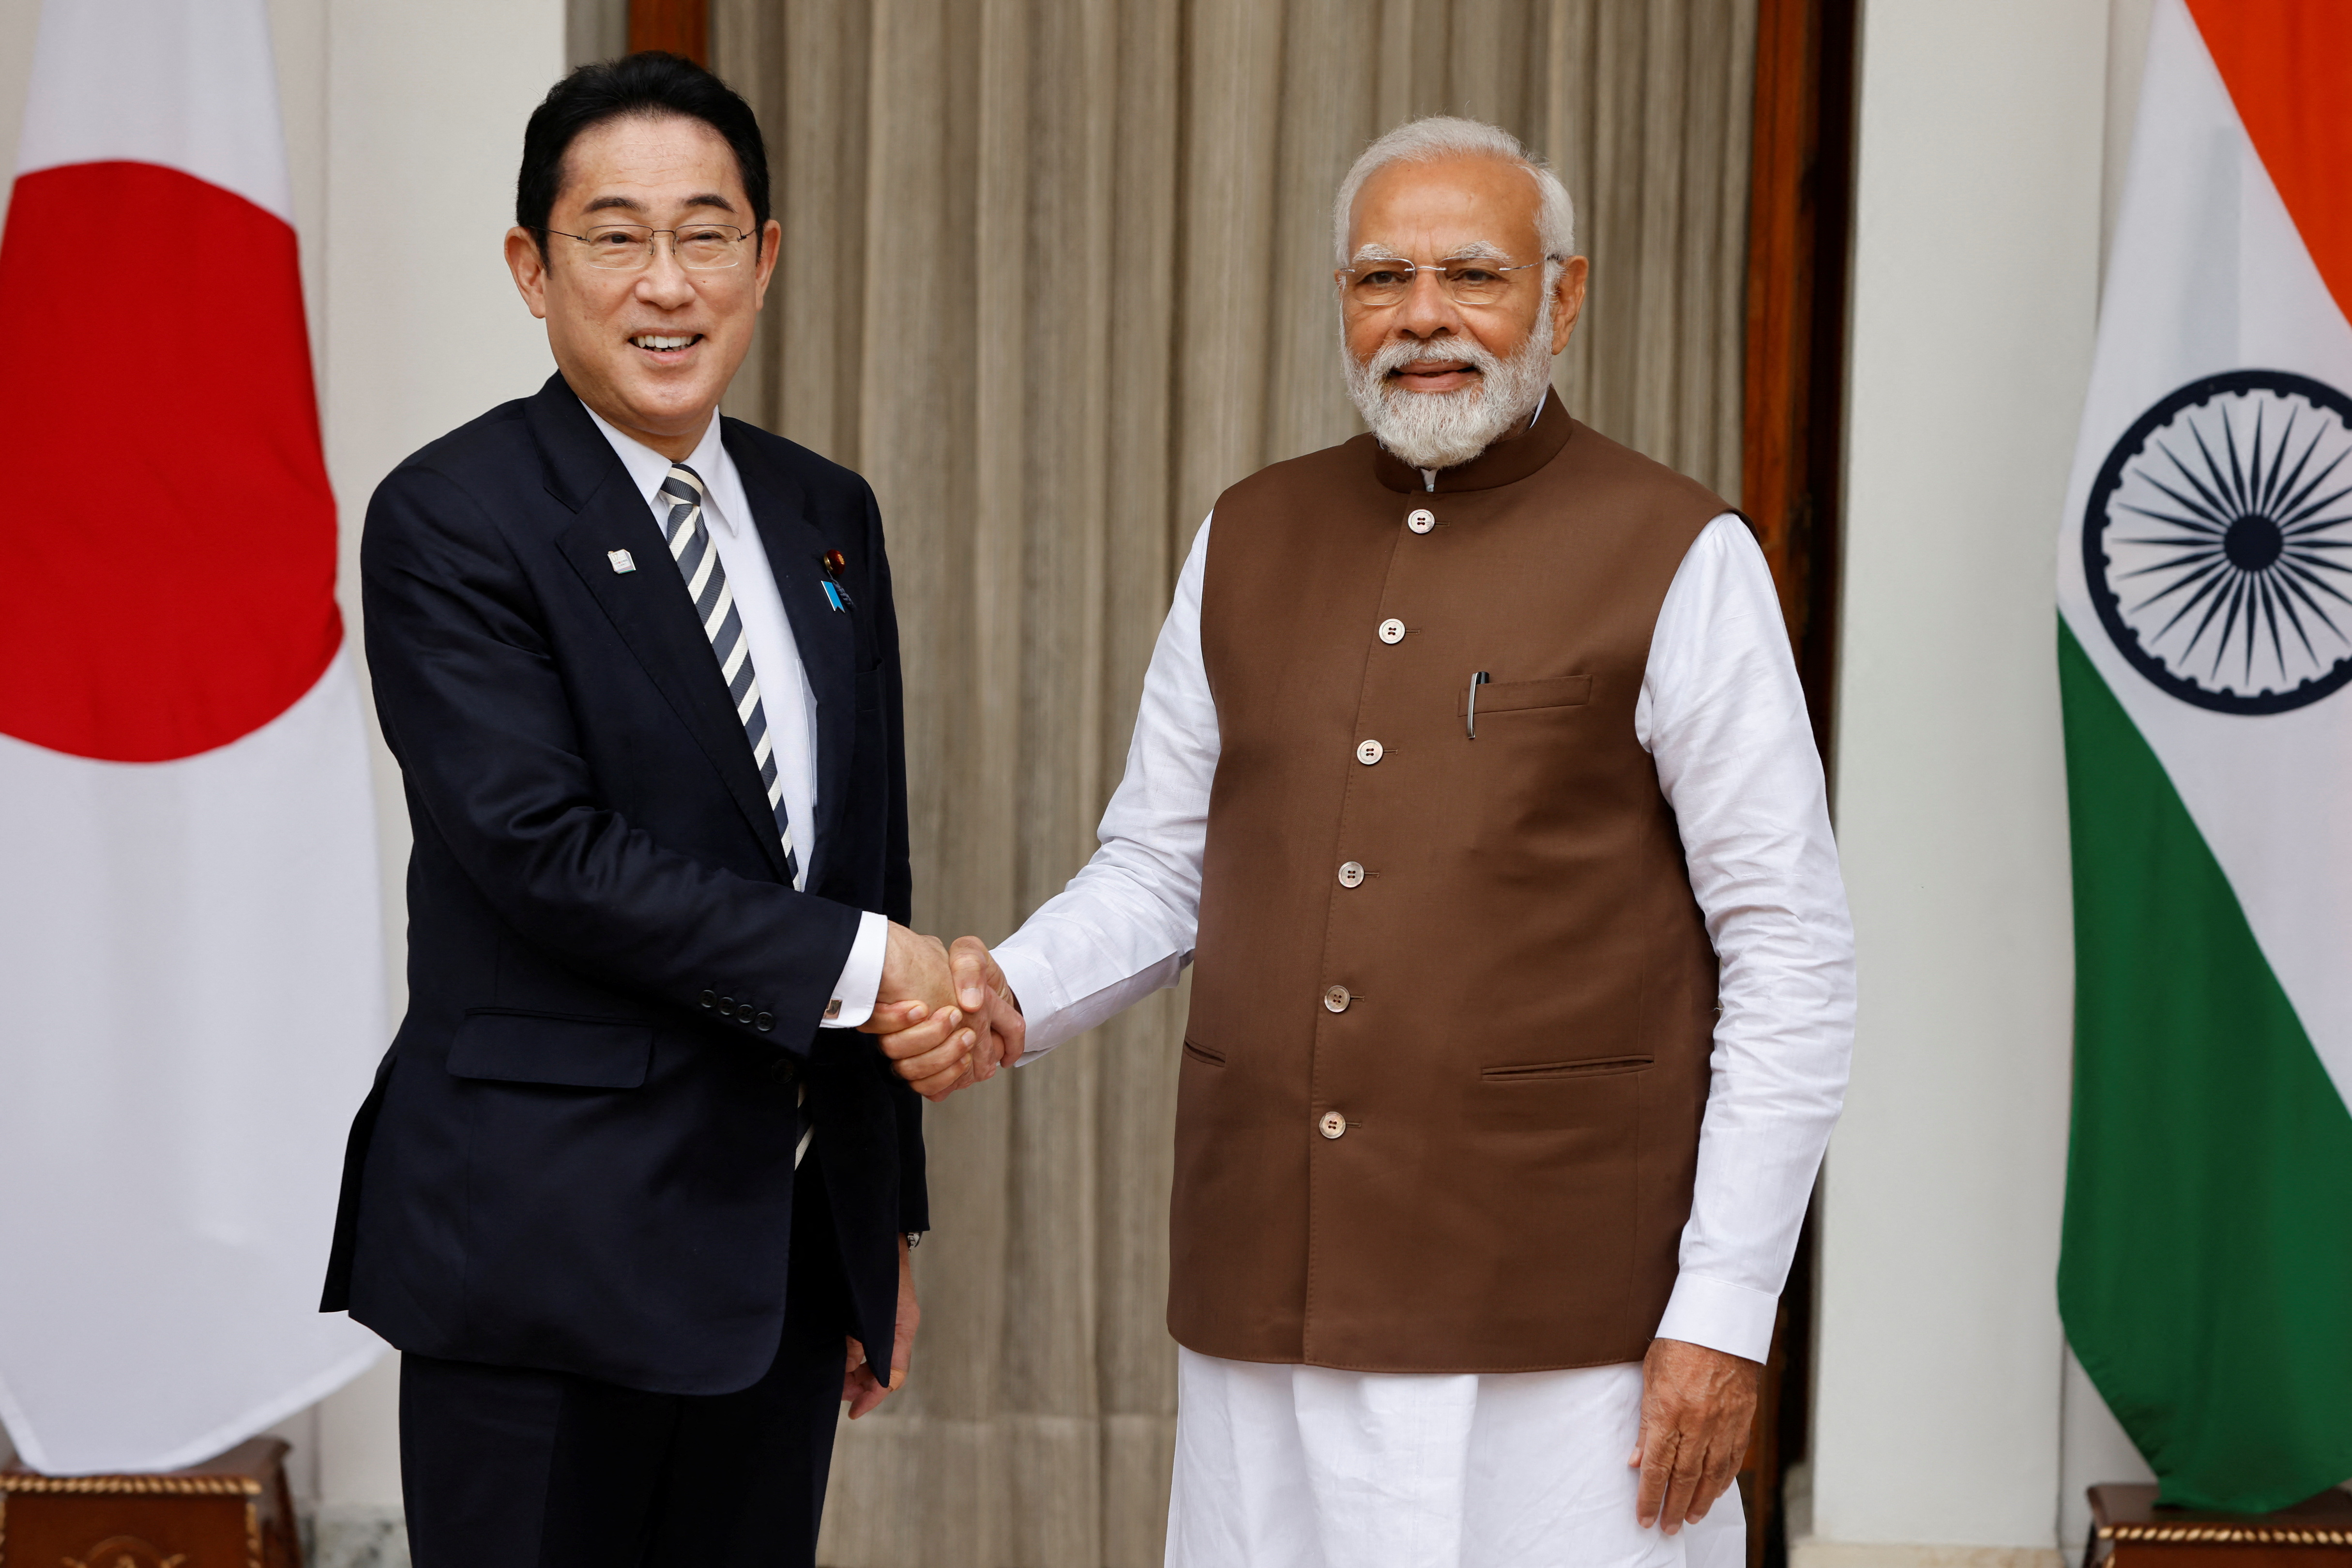 El primer ministro japonés, Fumio Kishida, estrecha la mano de su homólogo indio, Narendra Modi, antes de su reunión en la Hyderabad House de Nueva Delhi, India, 20 de marzo de 2023. (REUTERS/Adnan Abidi)